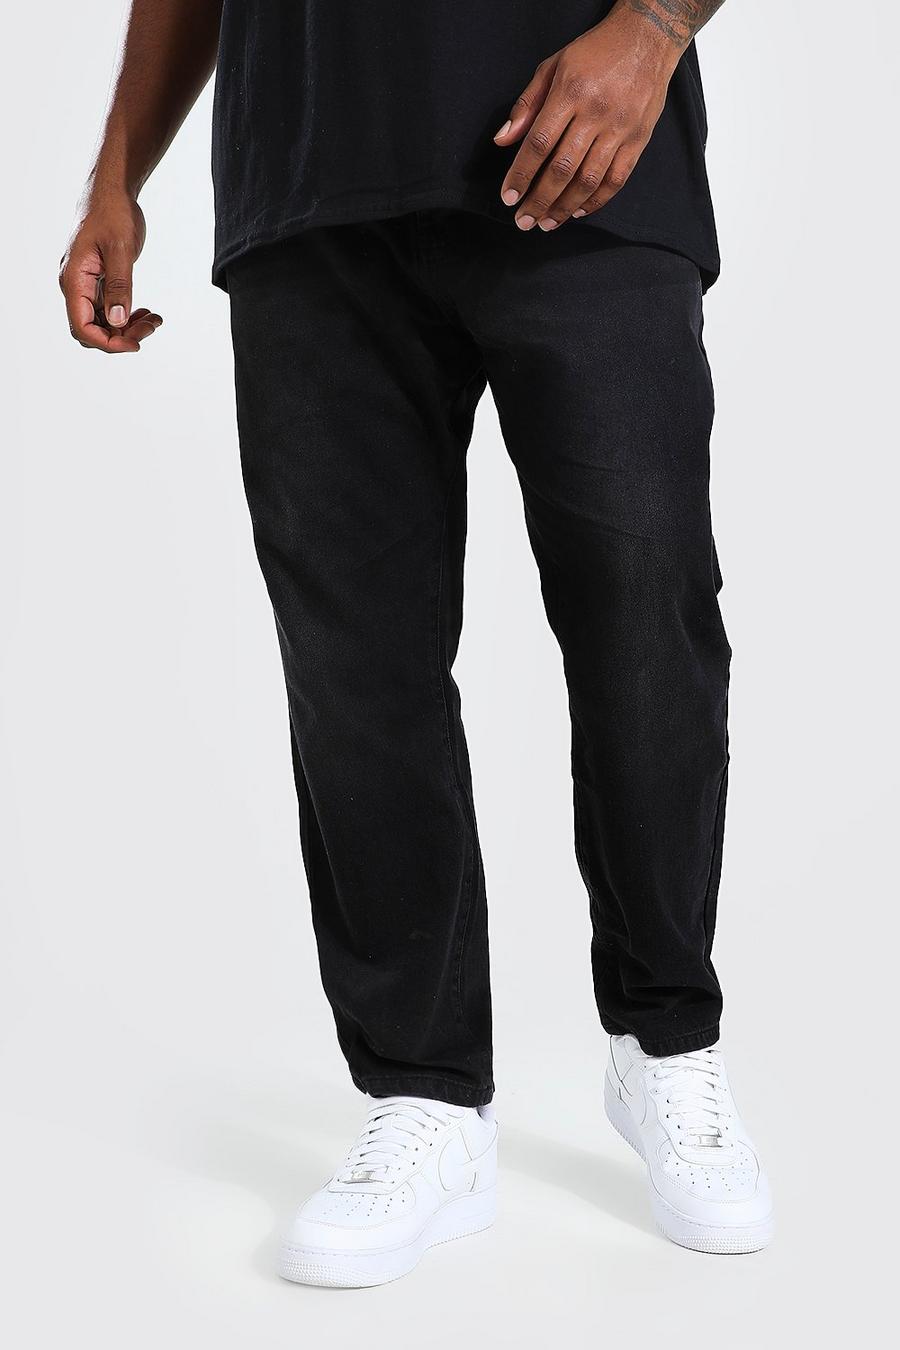 שחור דהוי ג'ינס מבד קשיח בגזרה צרה למידות גדולות image number 1